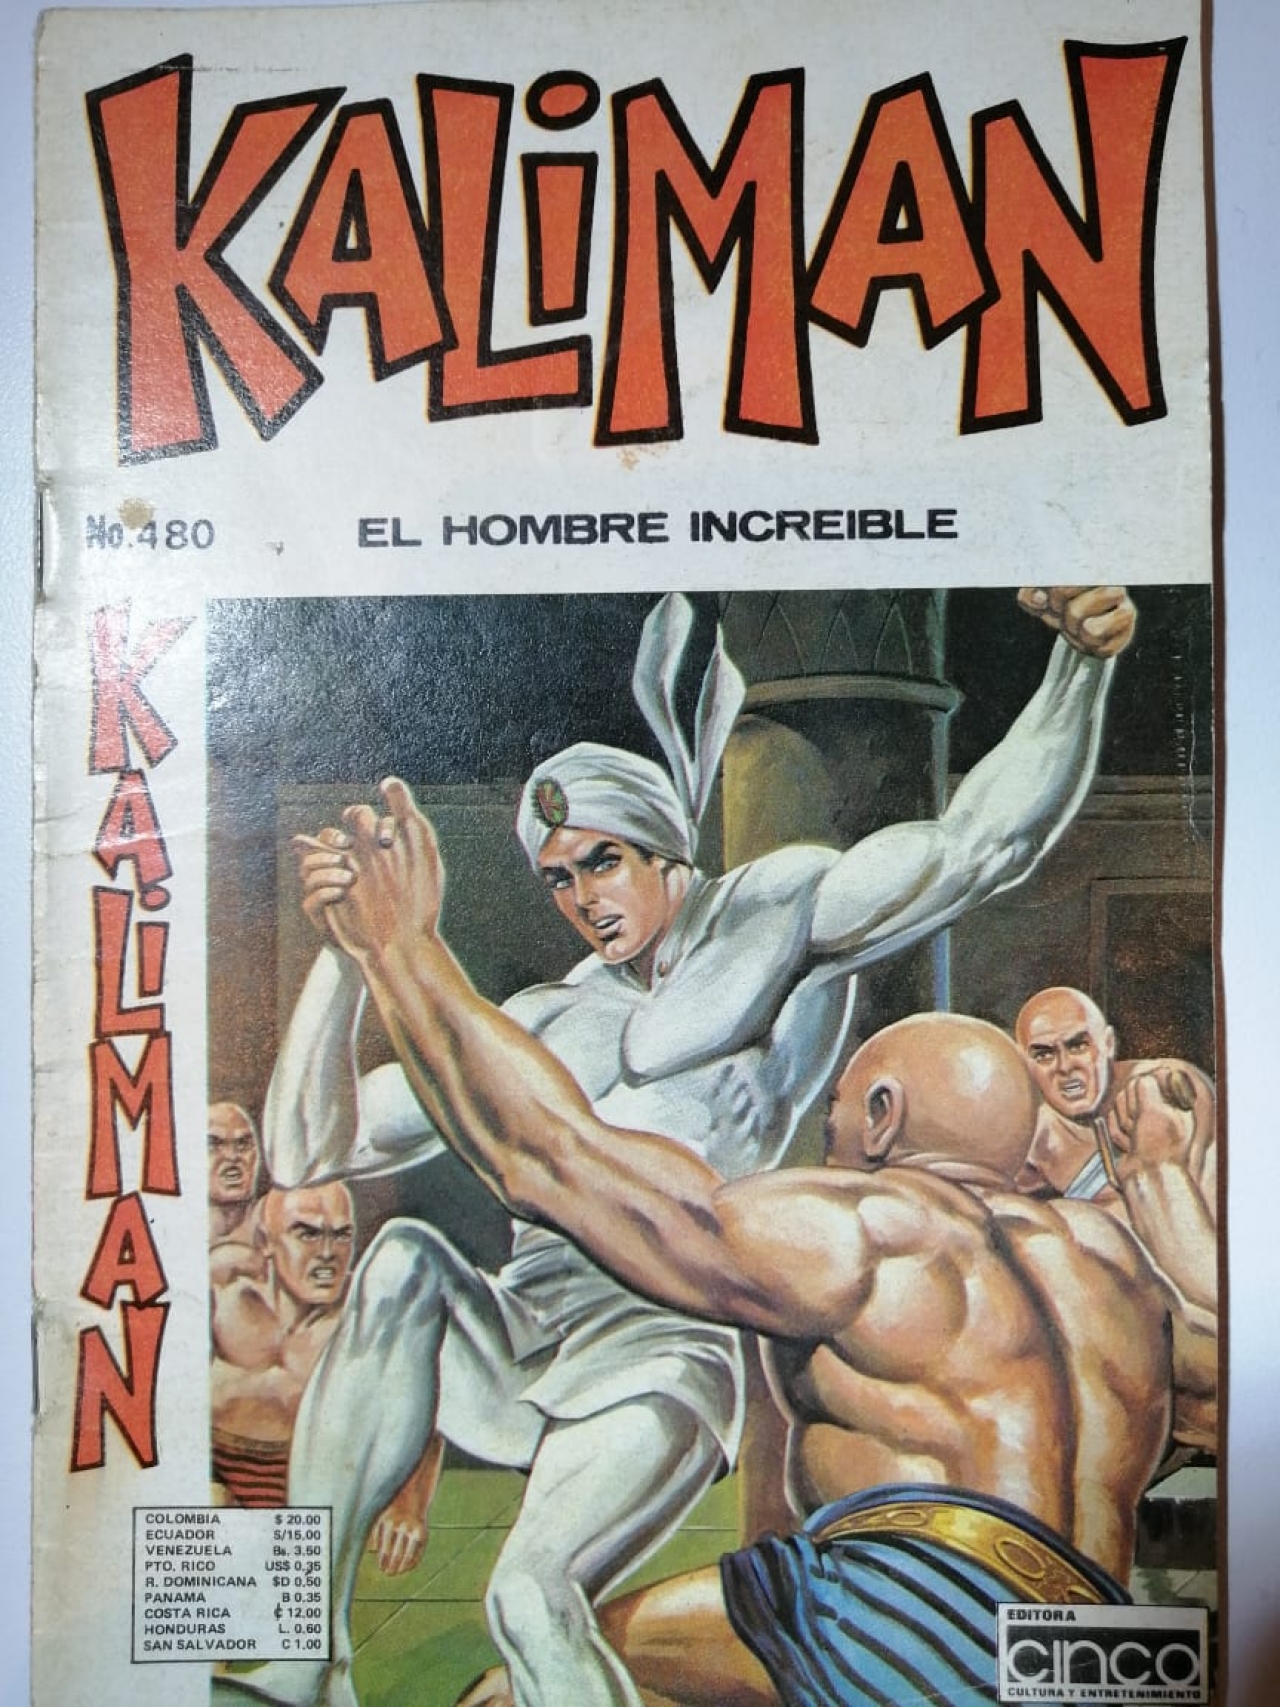 El regreso de Kaliman, el hombre increíble